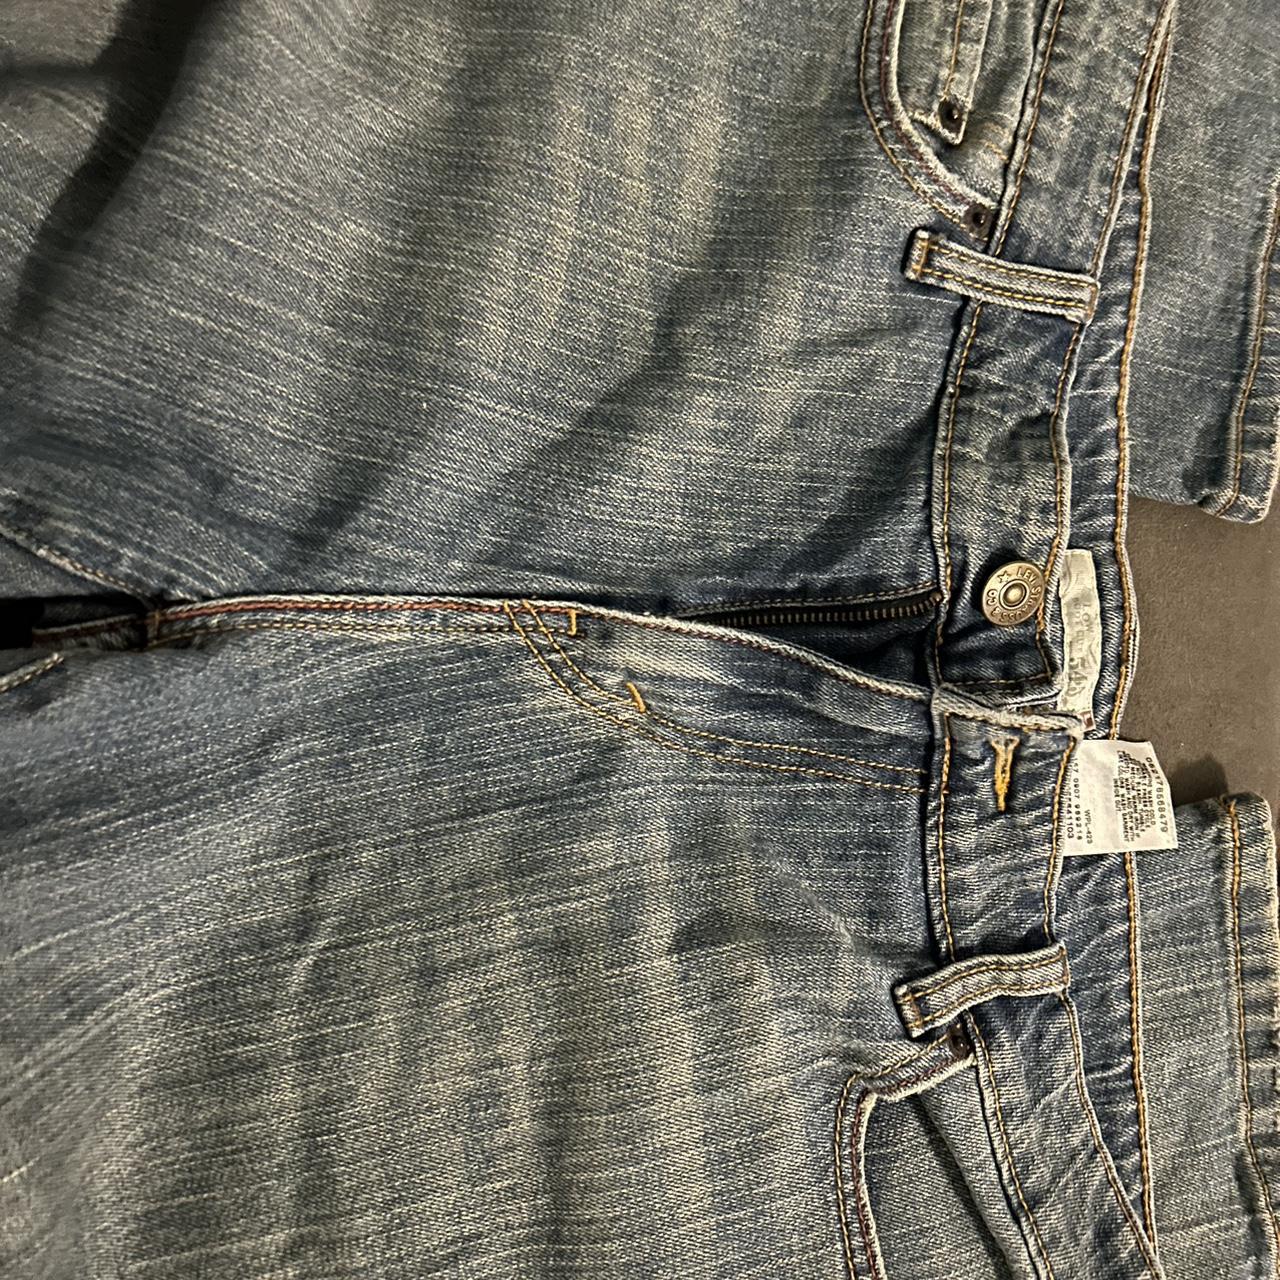 Levi 545 low rise bootcut denim jeans size 16m Has... - Depop